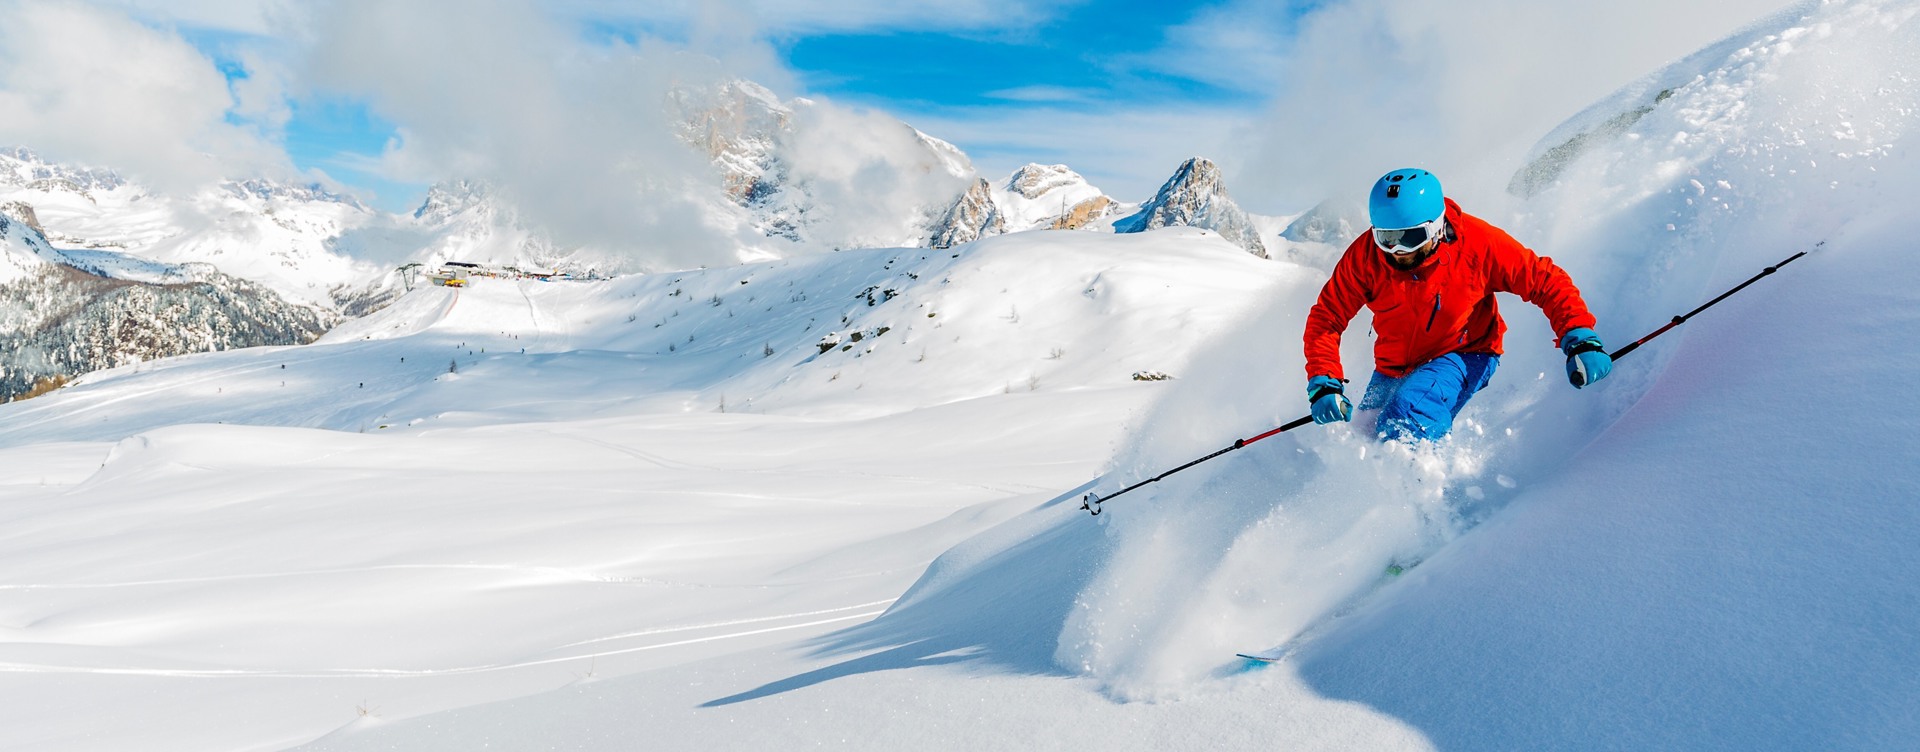 Aventúrate por los magníficos dominios de esquí
de Vallorcine y alrededores